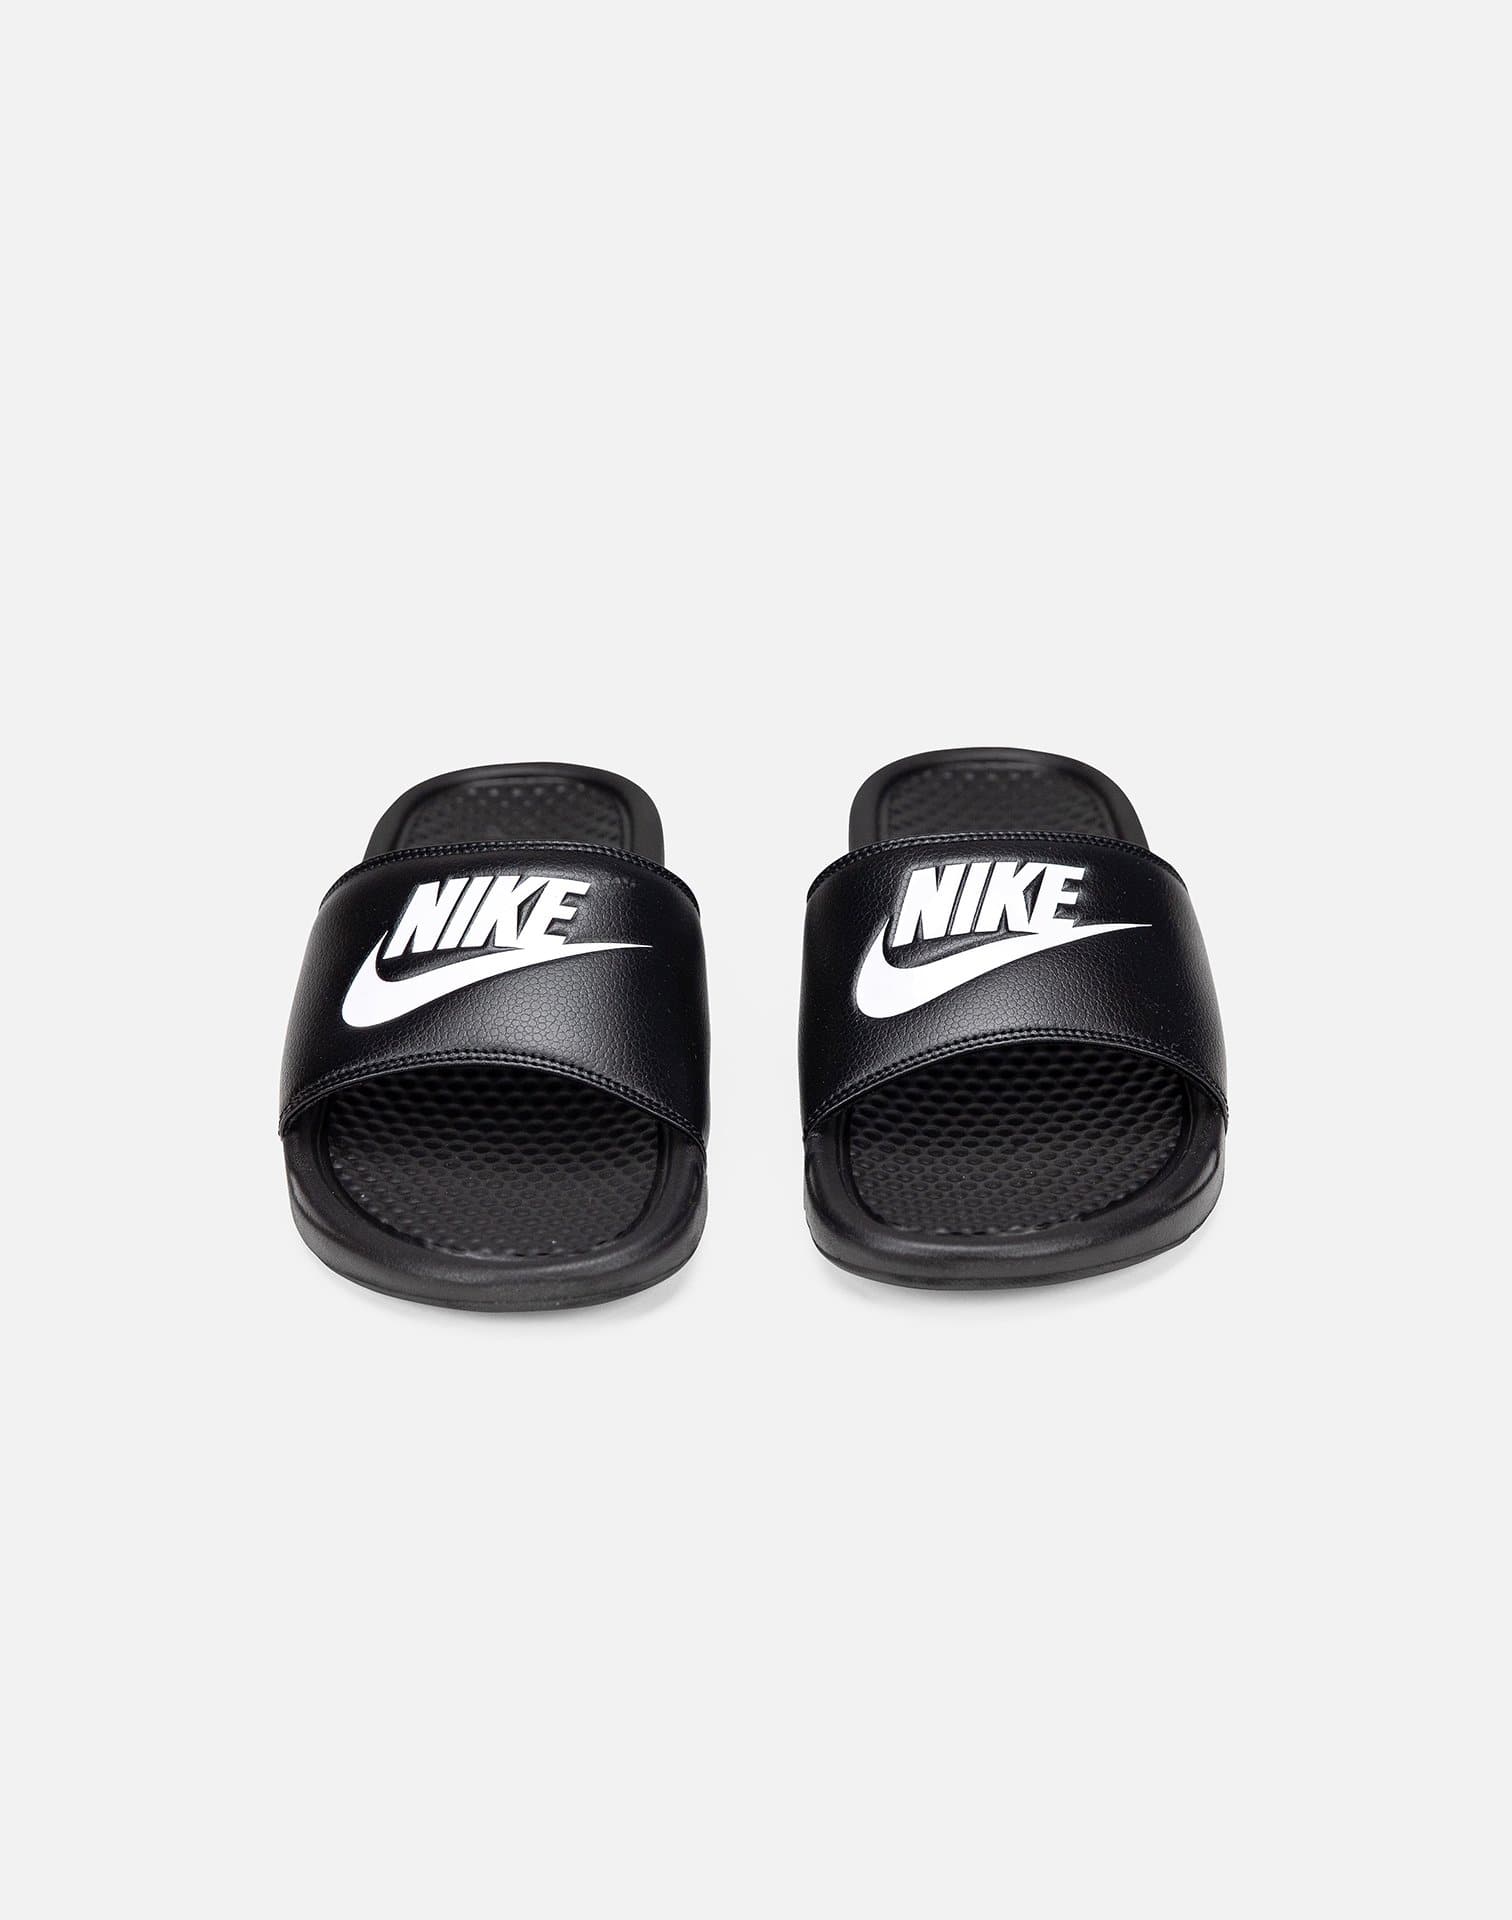 Nike Just Slides – DTLR